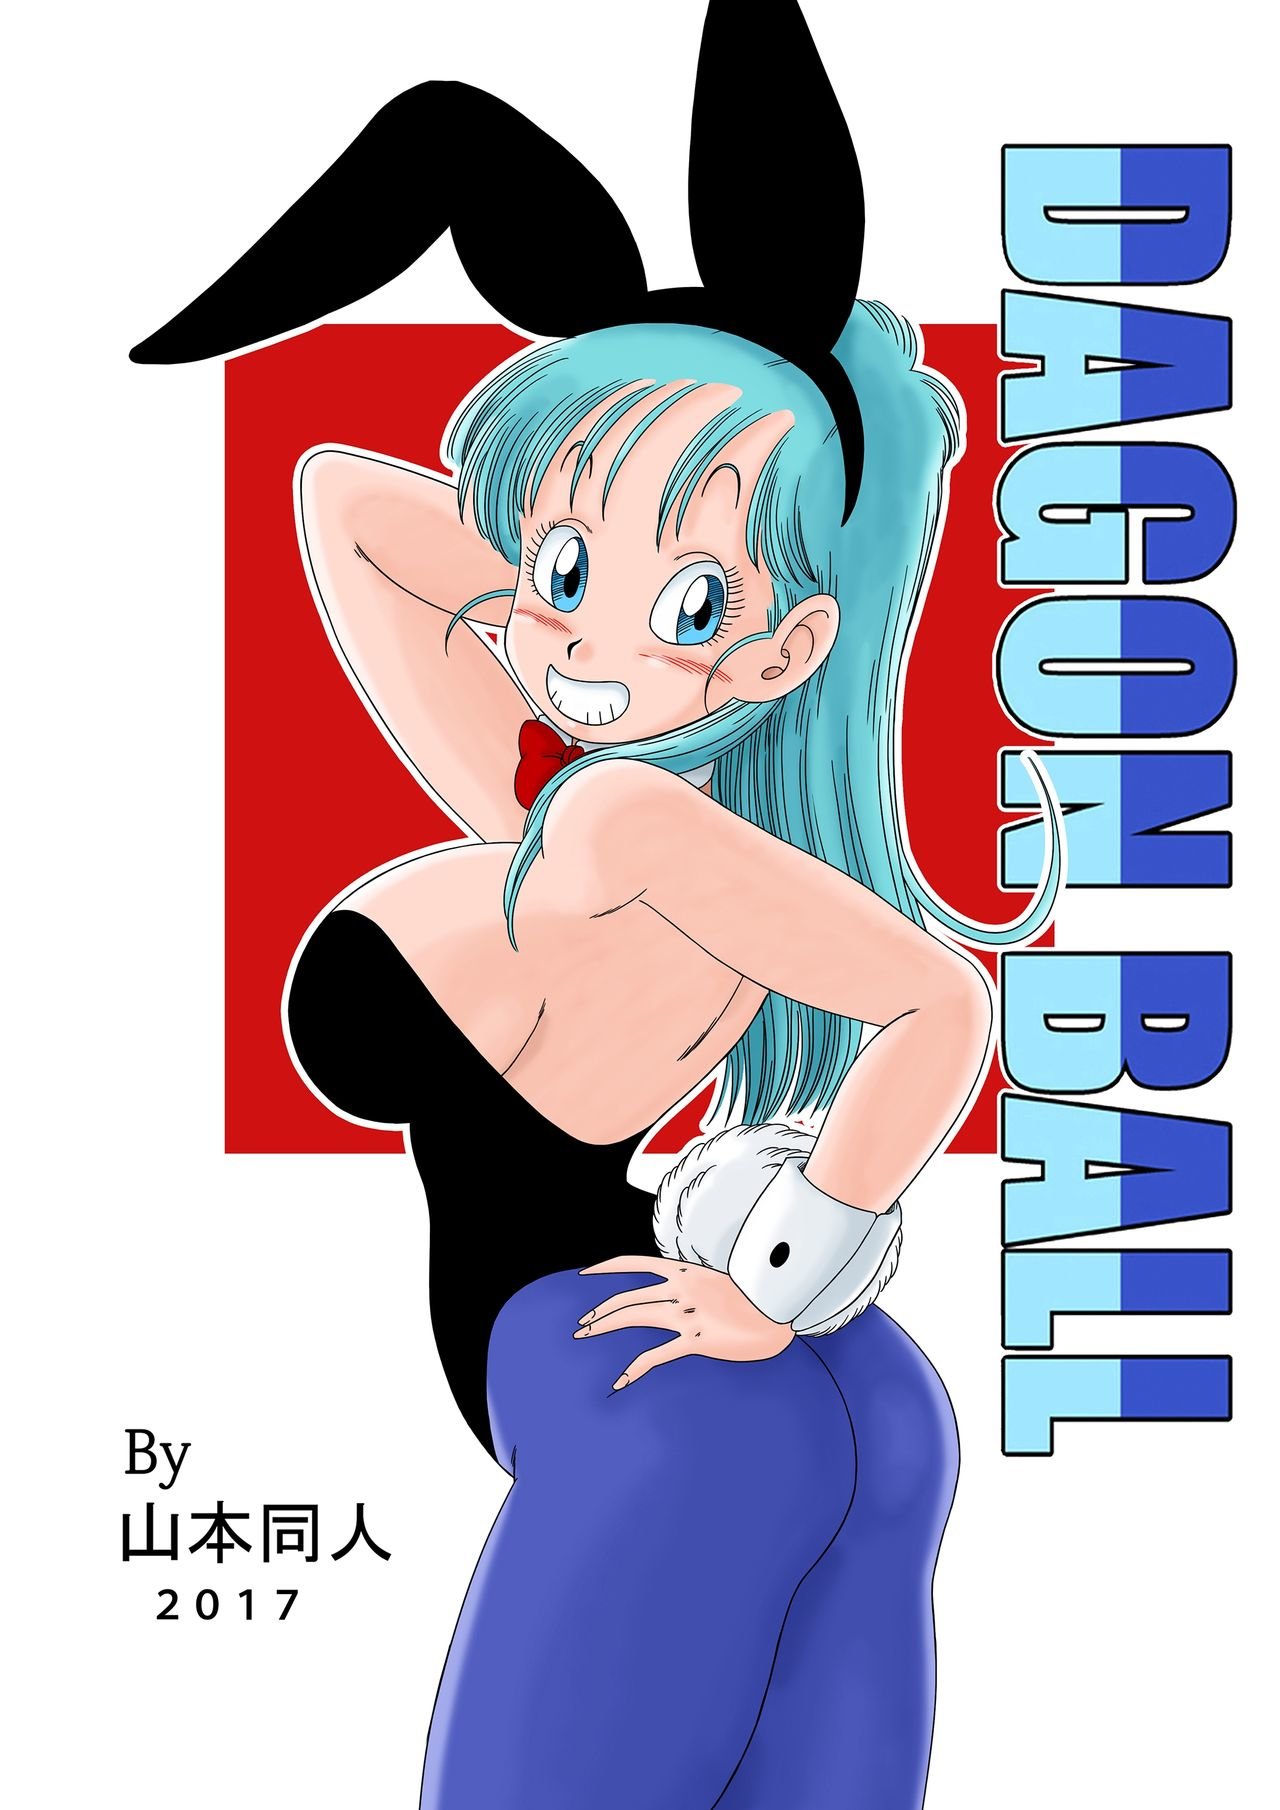 Bunny Girl Transformation - Tansformacion En Chica Conejo - 23